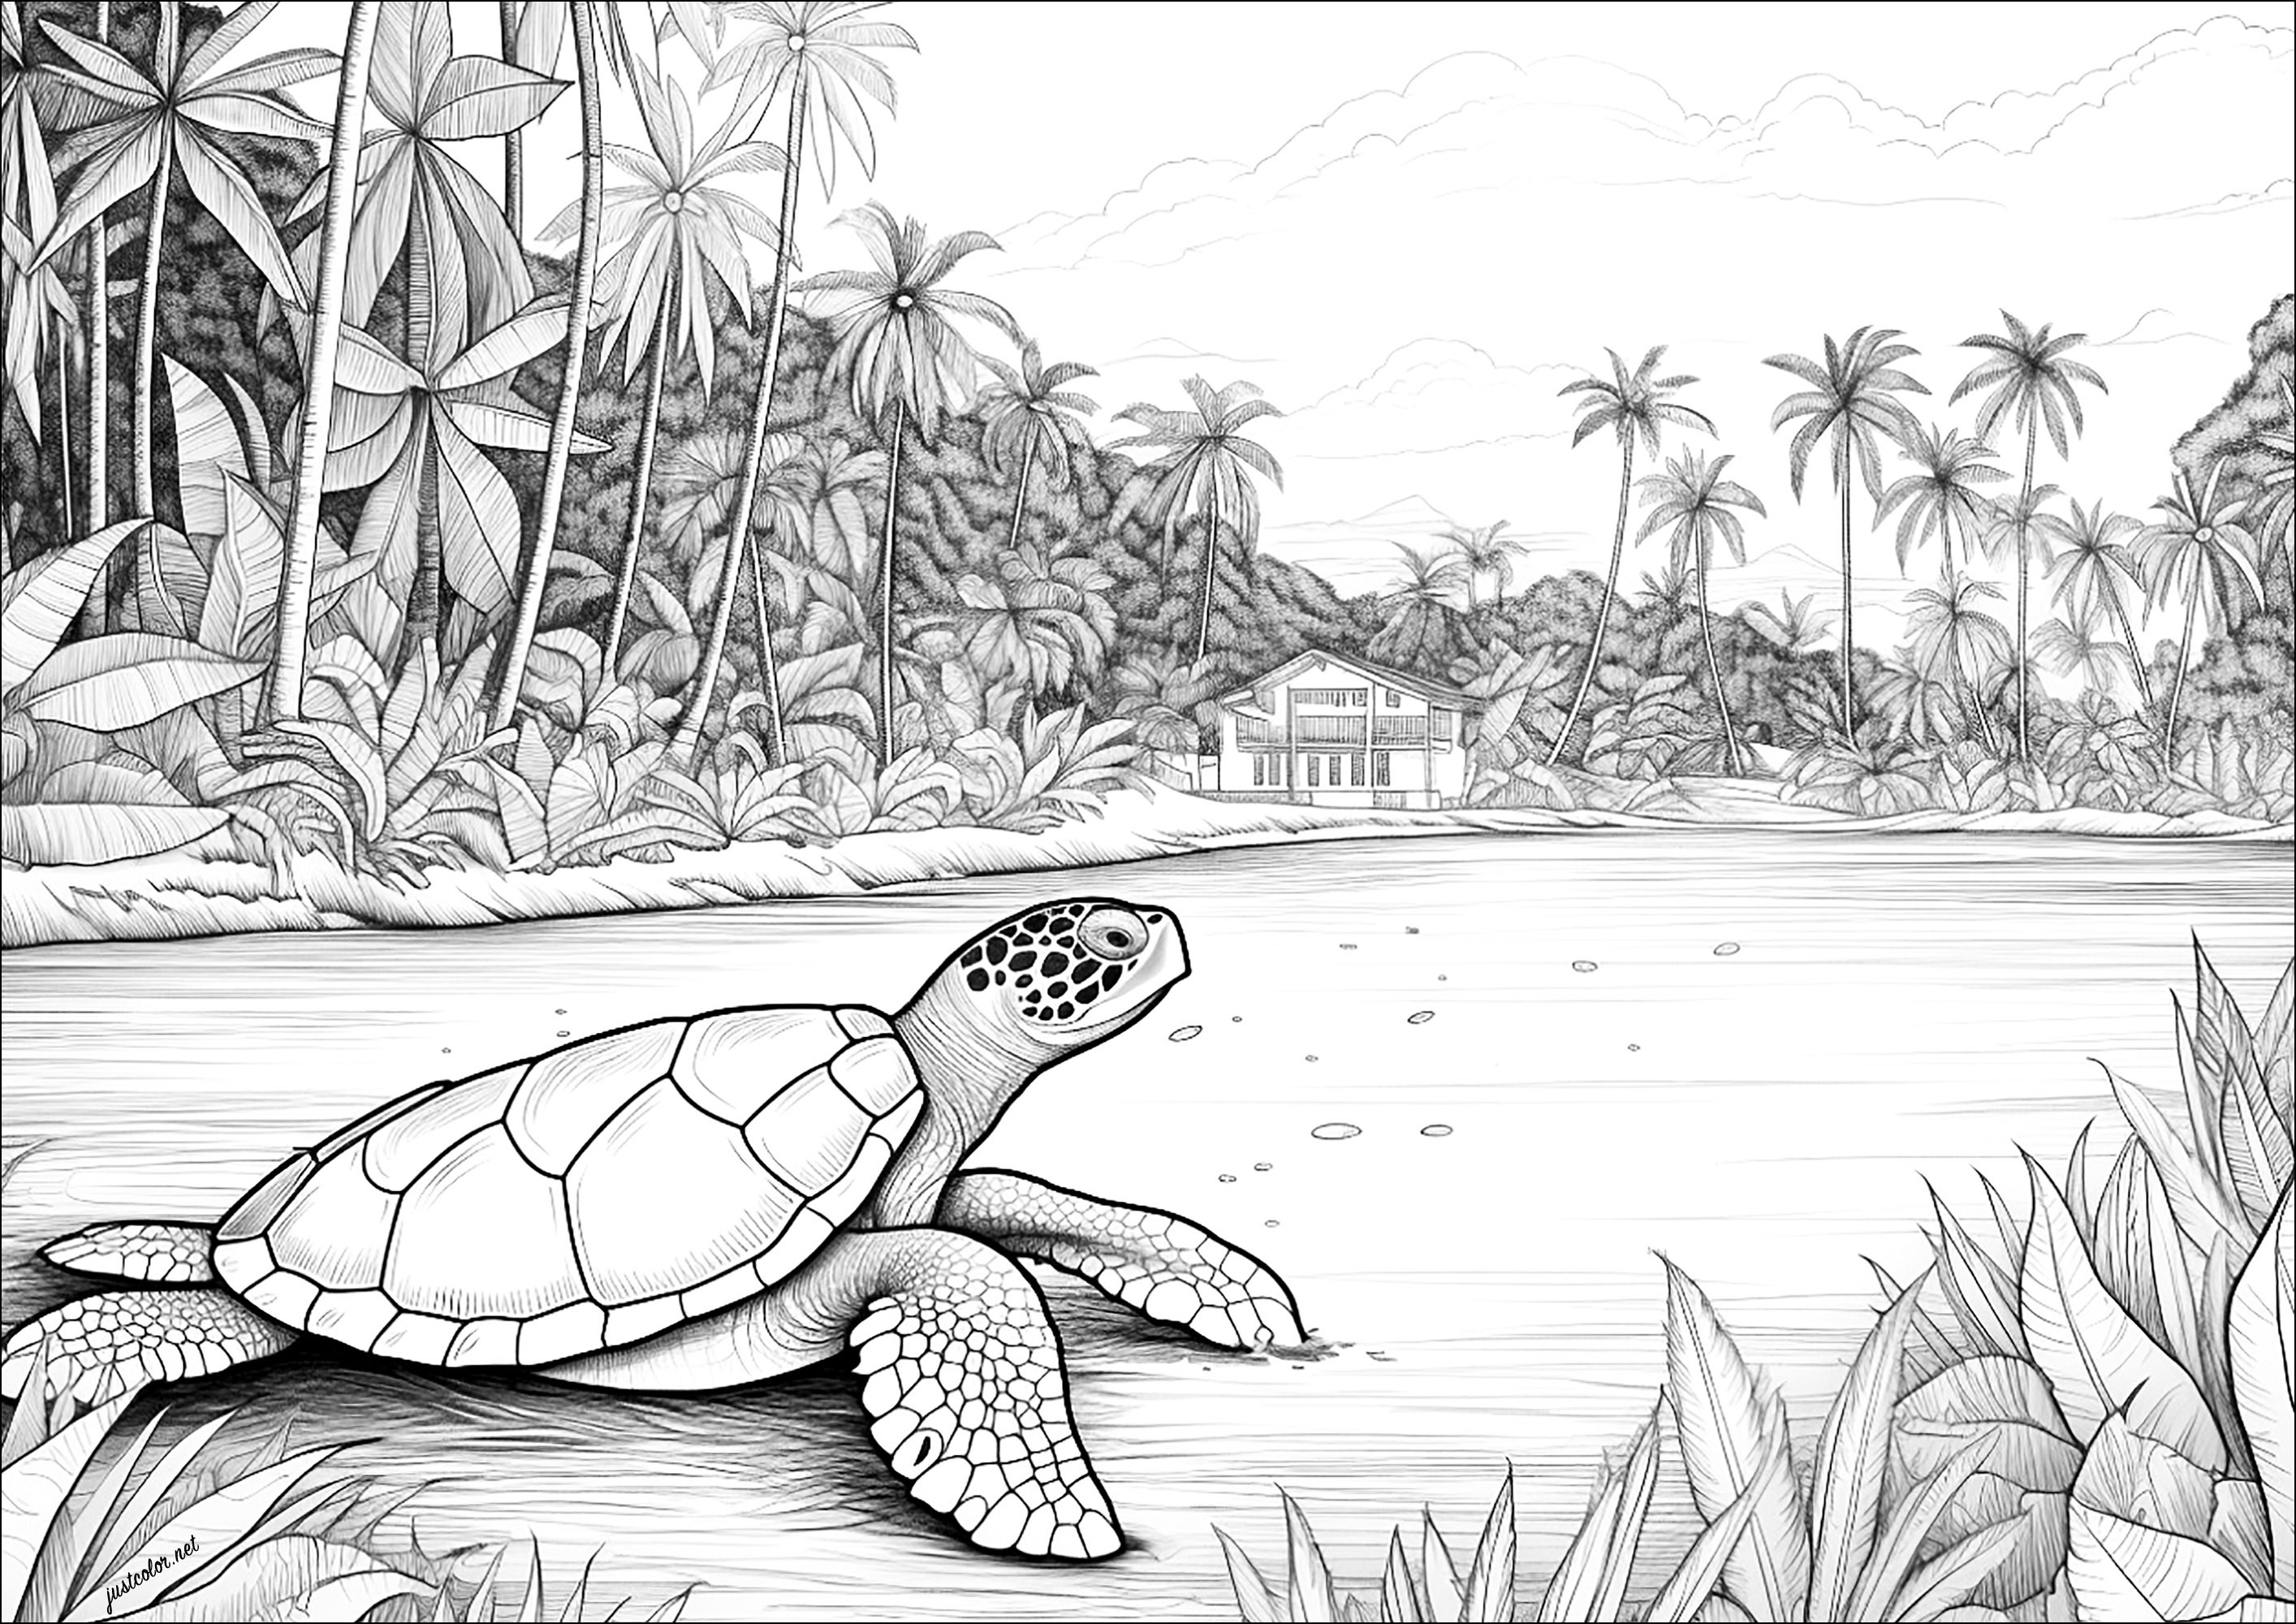 Une tortue sur une plage. Un coloriage complexe, réaliste et détaillé